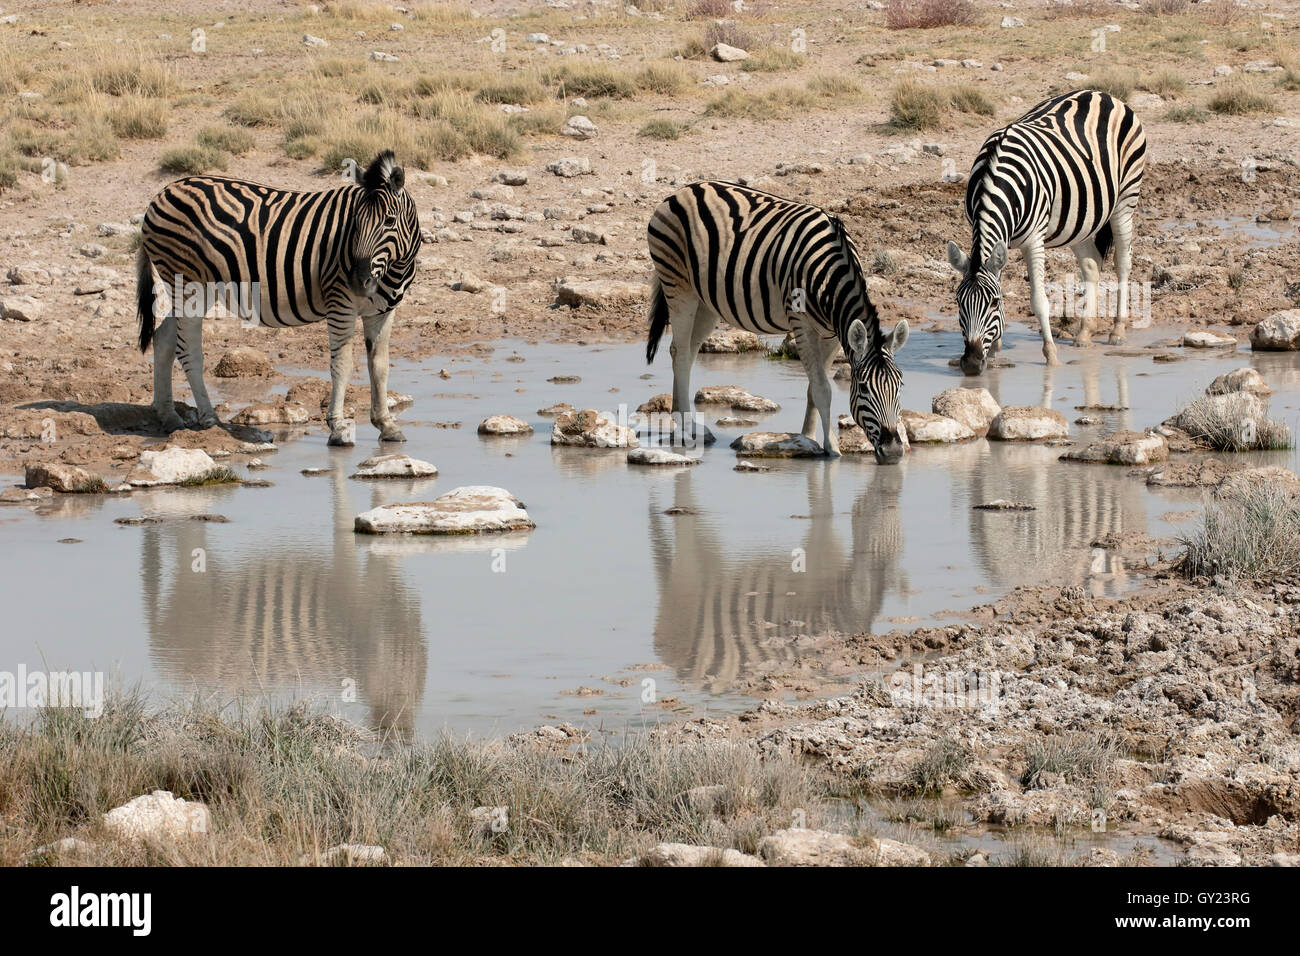 Llanuras, cebra Cebra común o Burchells, zebra Equus quagga, único mamífero, Namibia, agosto de 2016 Foto de stock